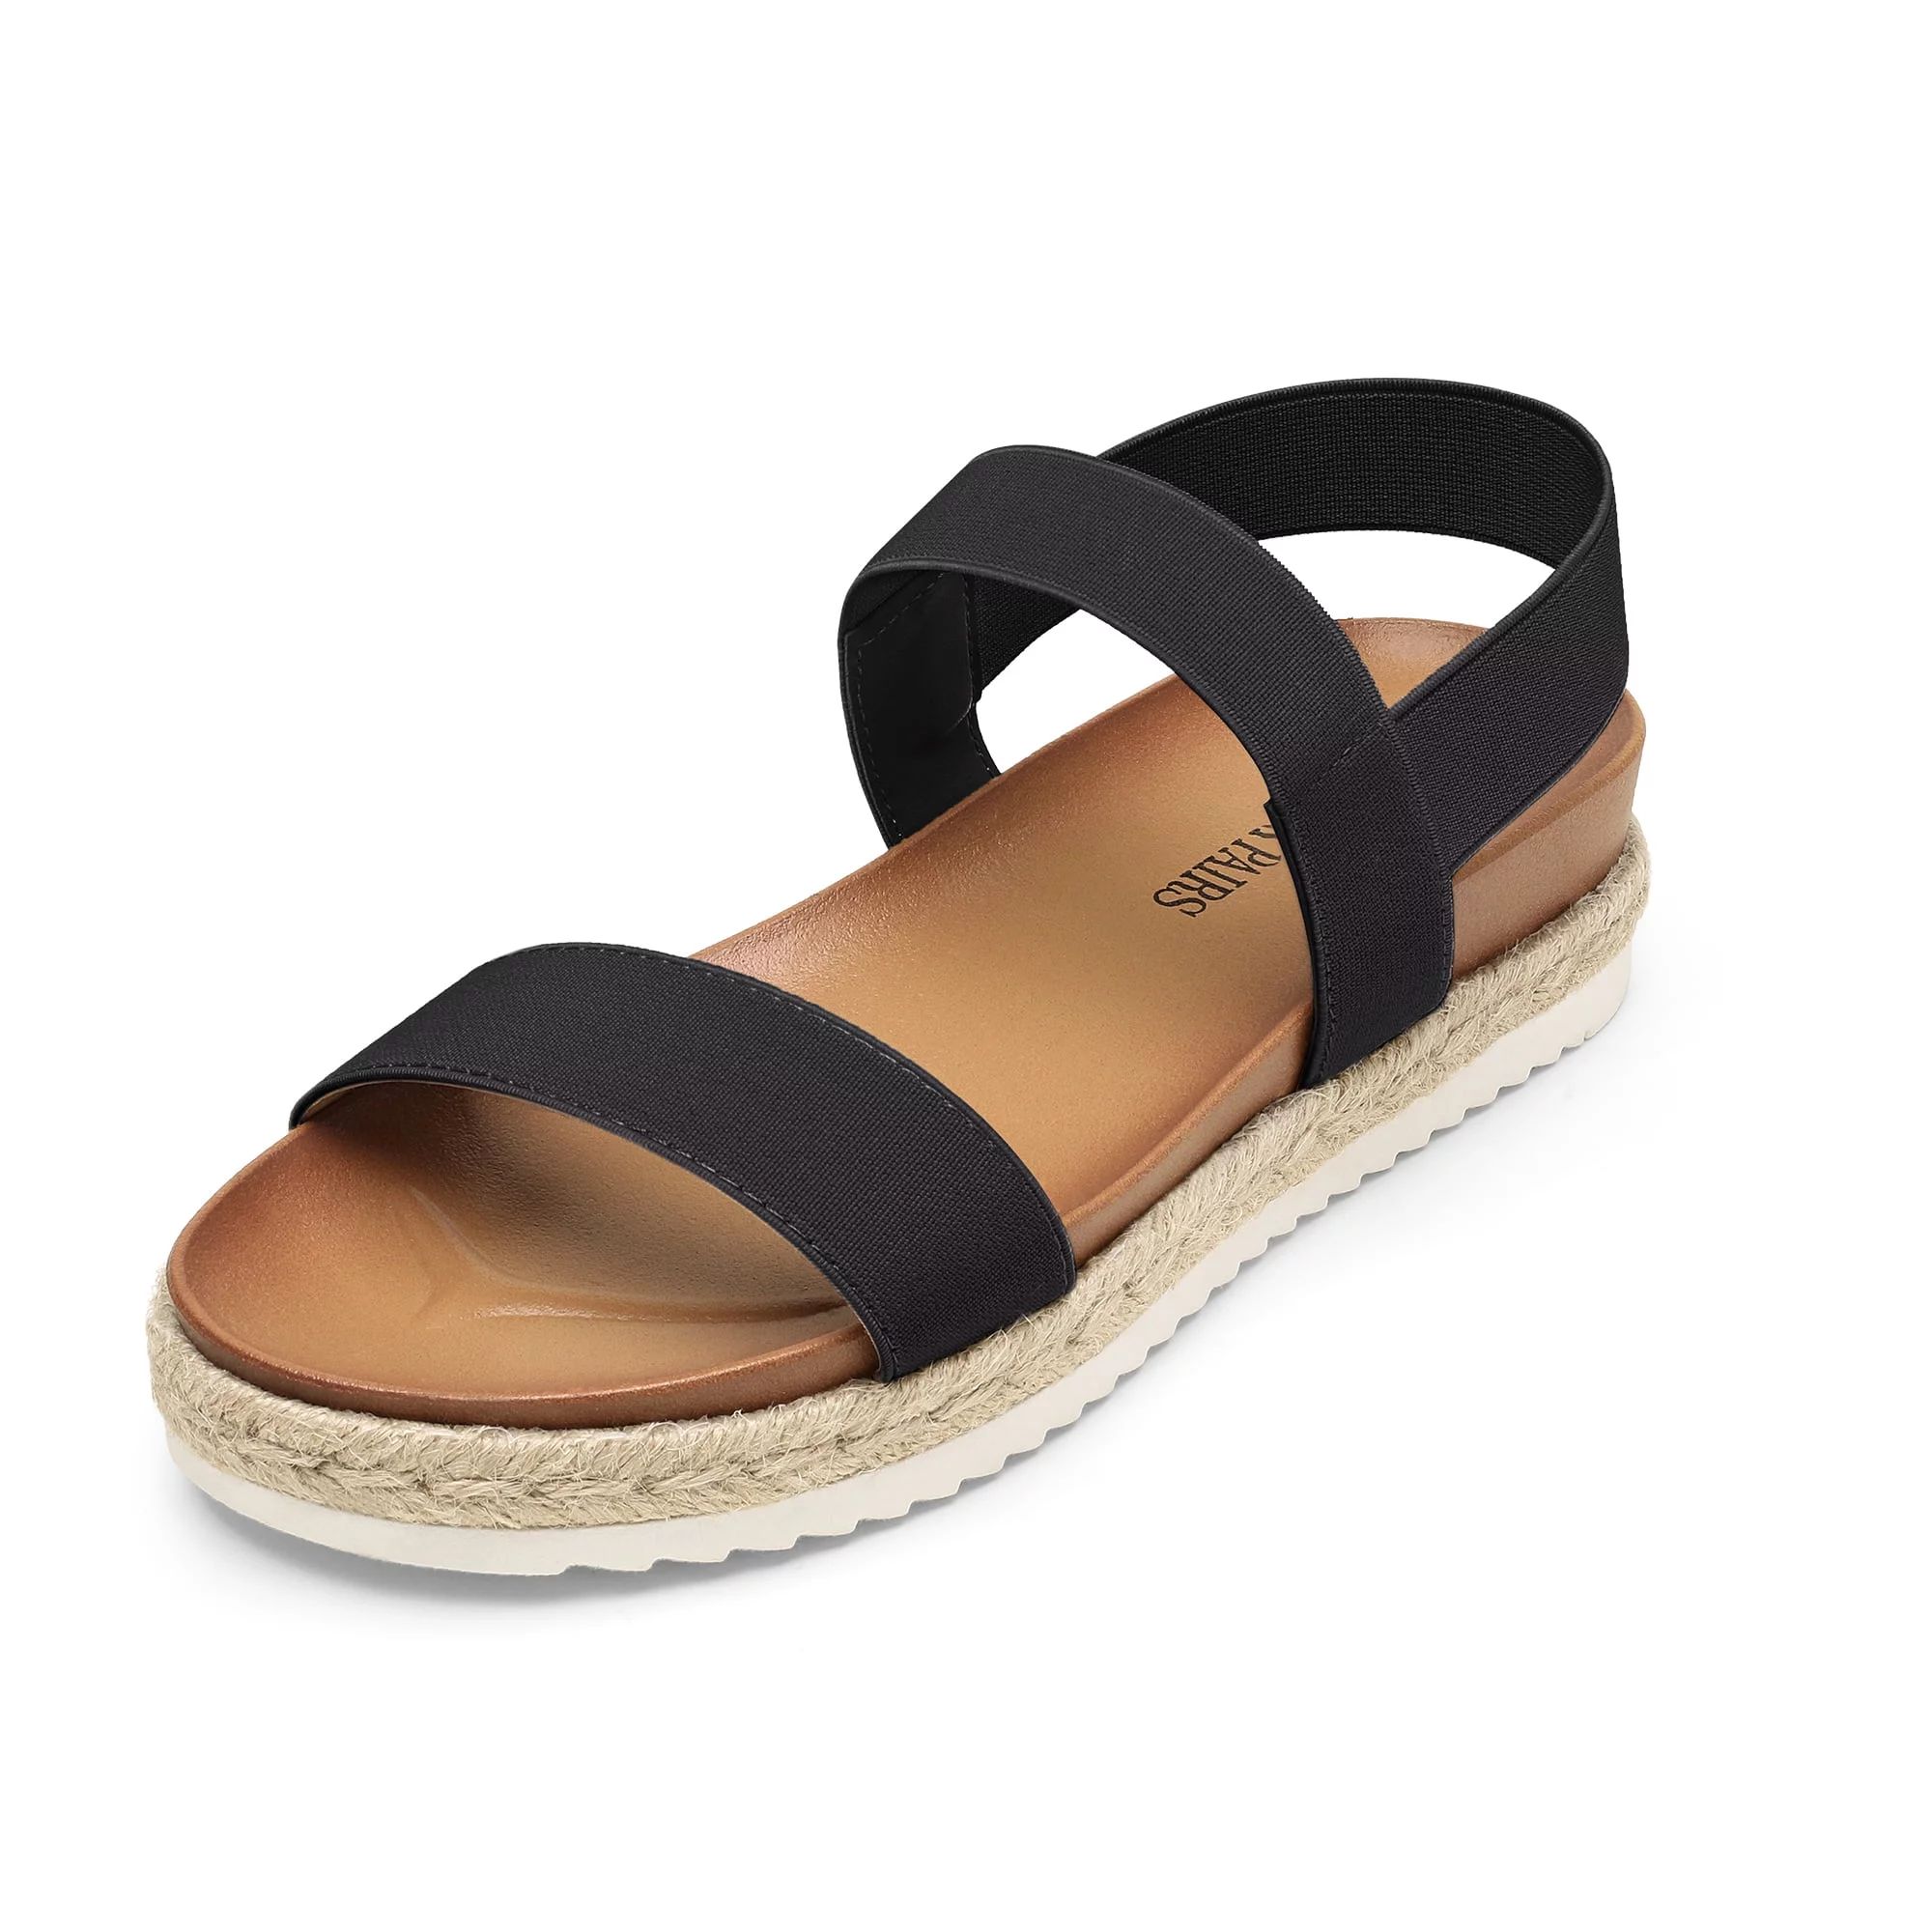 Dream Pairs Women's Elastic Ankle Strap Open Toe Espadrille Platform Sandals ROSAN BLACK Size 7 | Walmart (US)